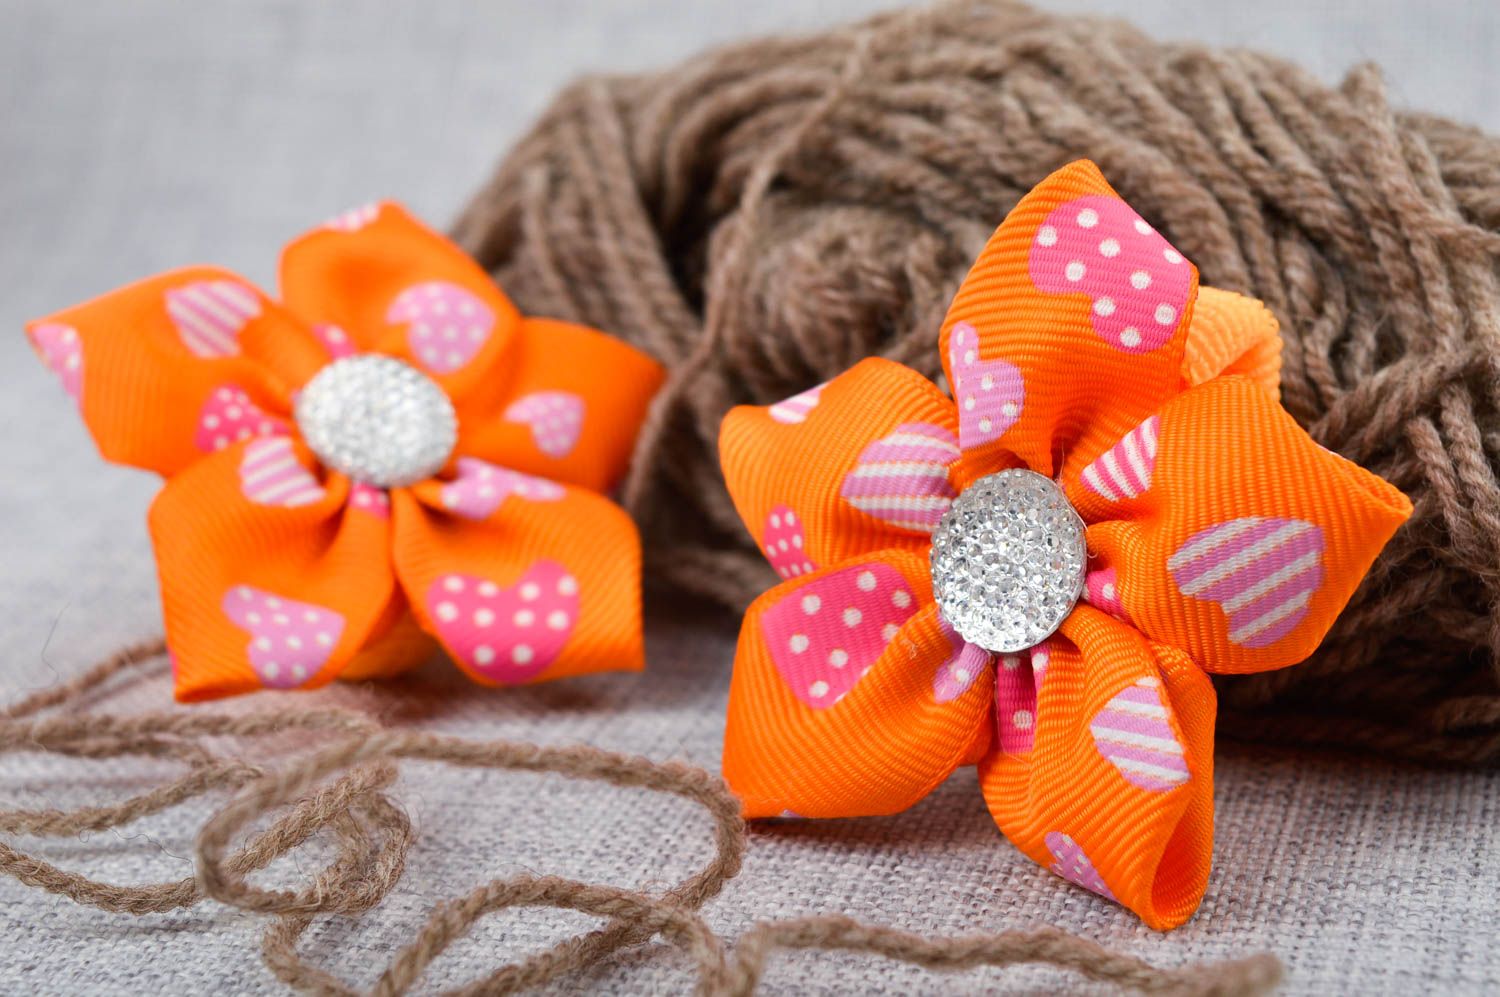 Handmade flower flower scrunchie 2 pieces childrens hair tie hair style ideas photo 1